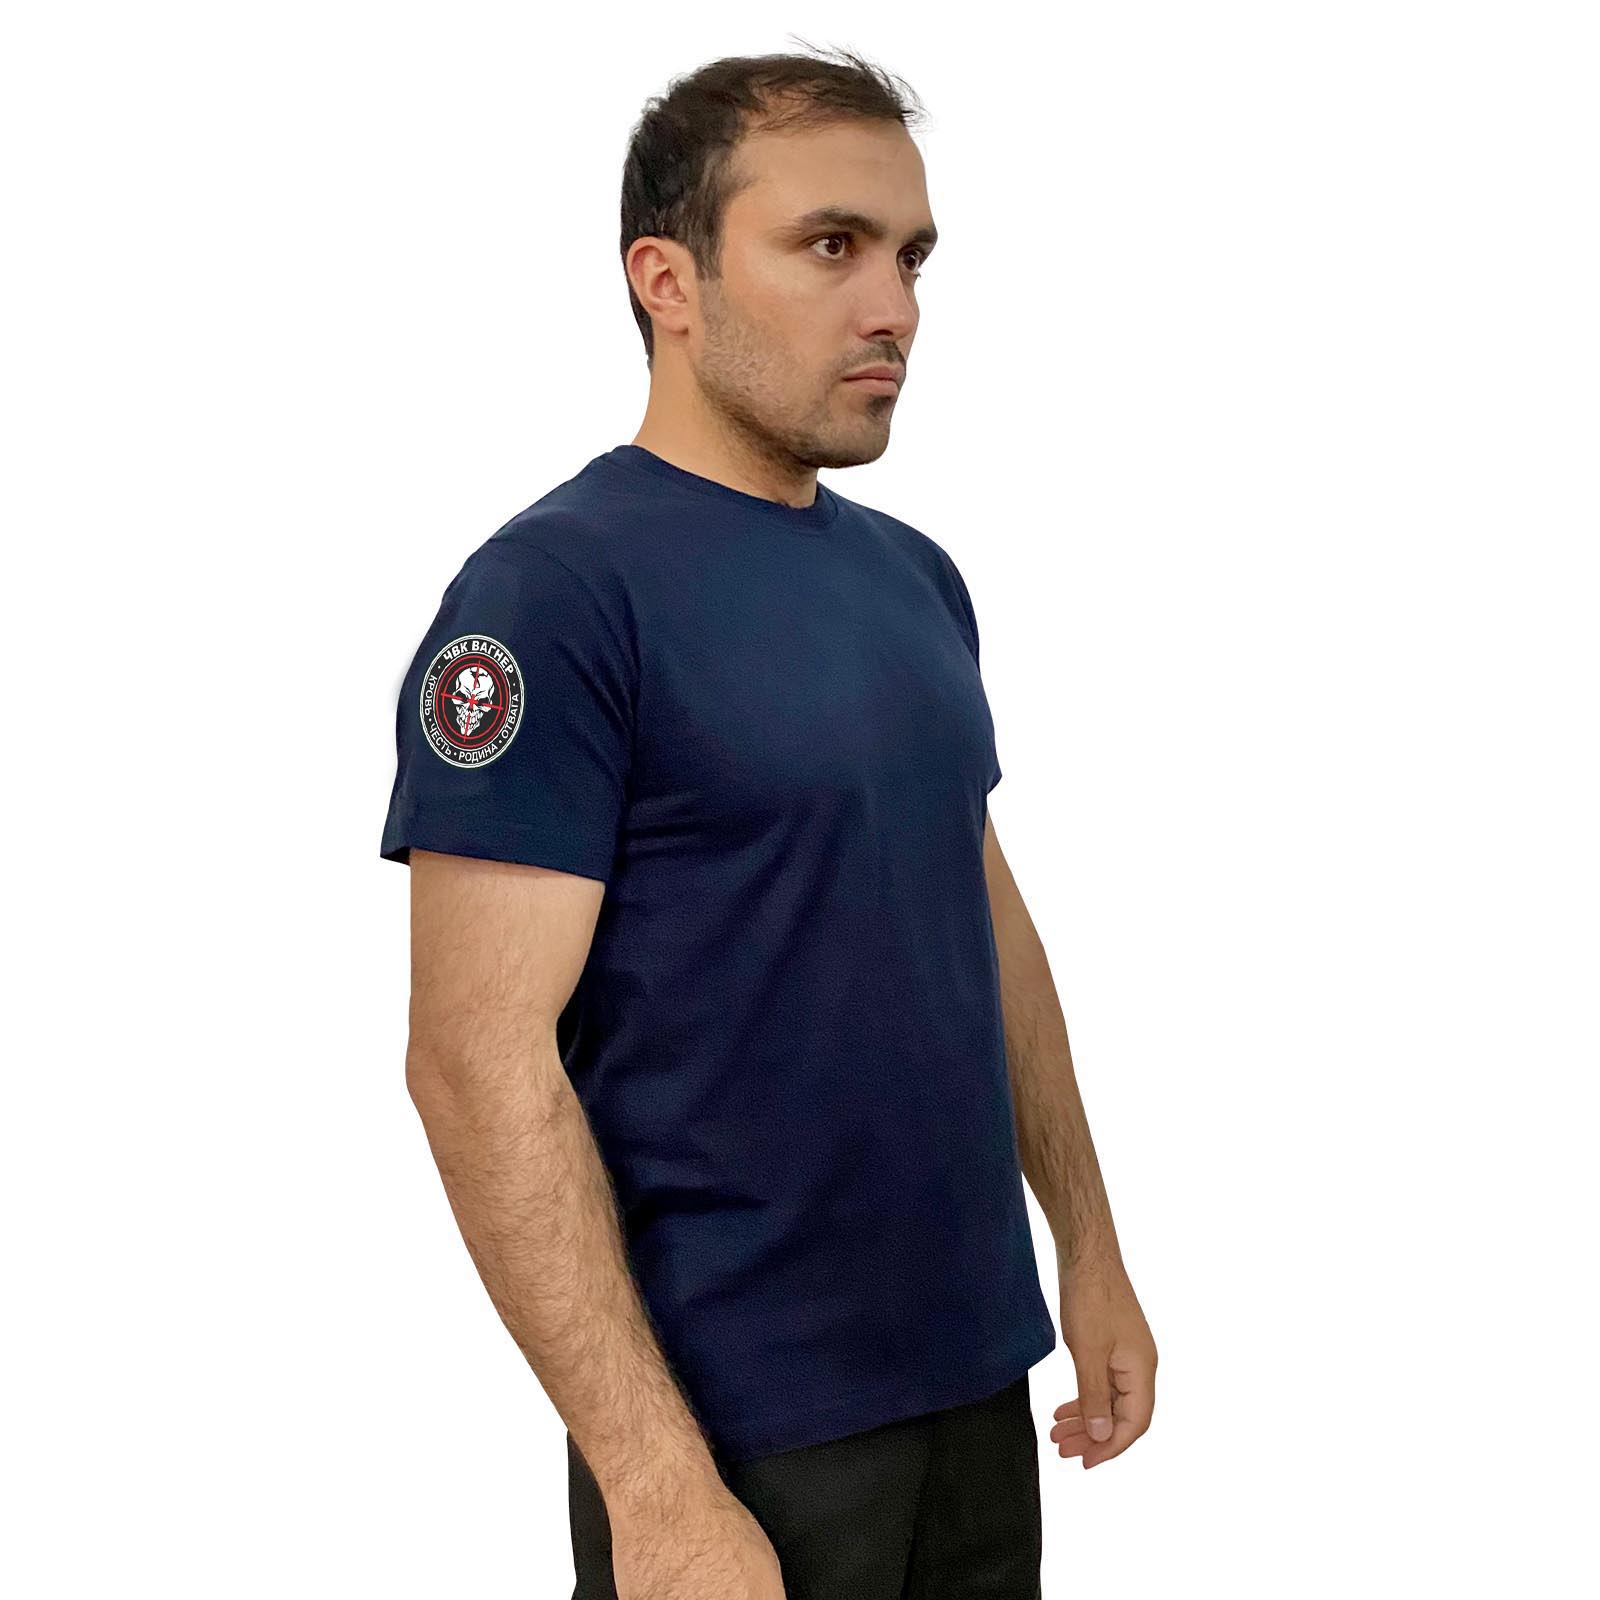 Купить хлопковую мужскую футболку с термотрансфером ЧВК Вагнер с доставкой